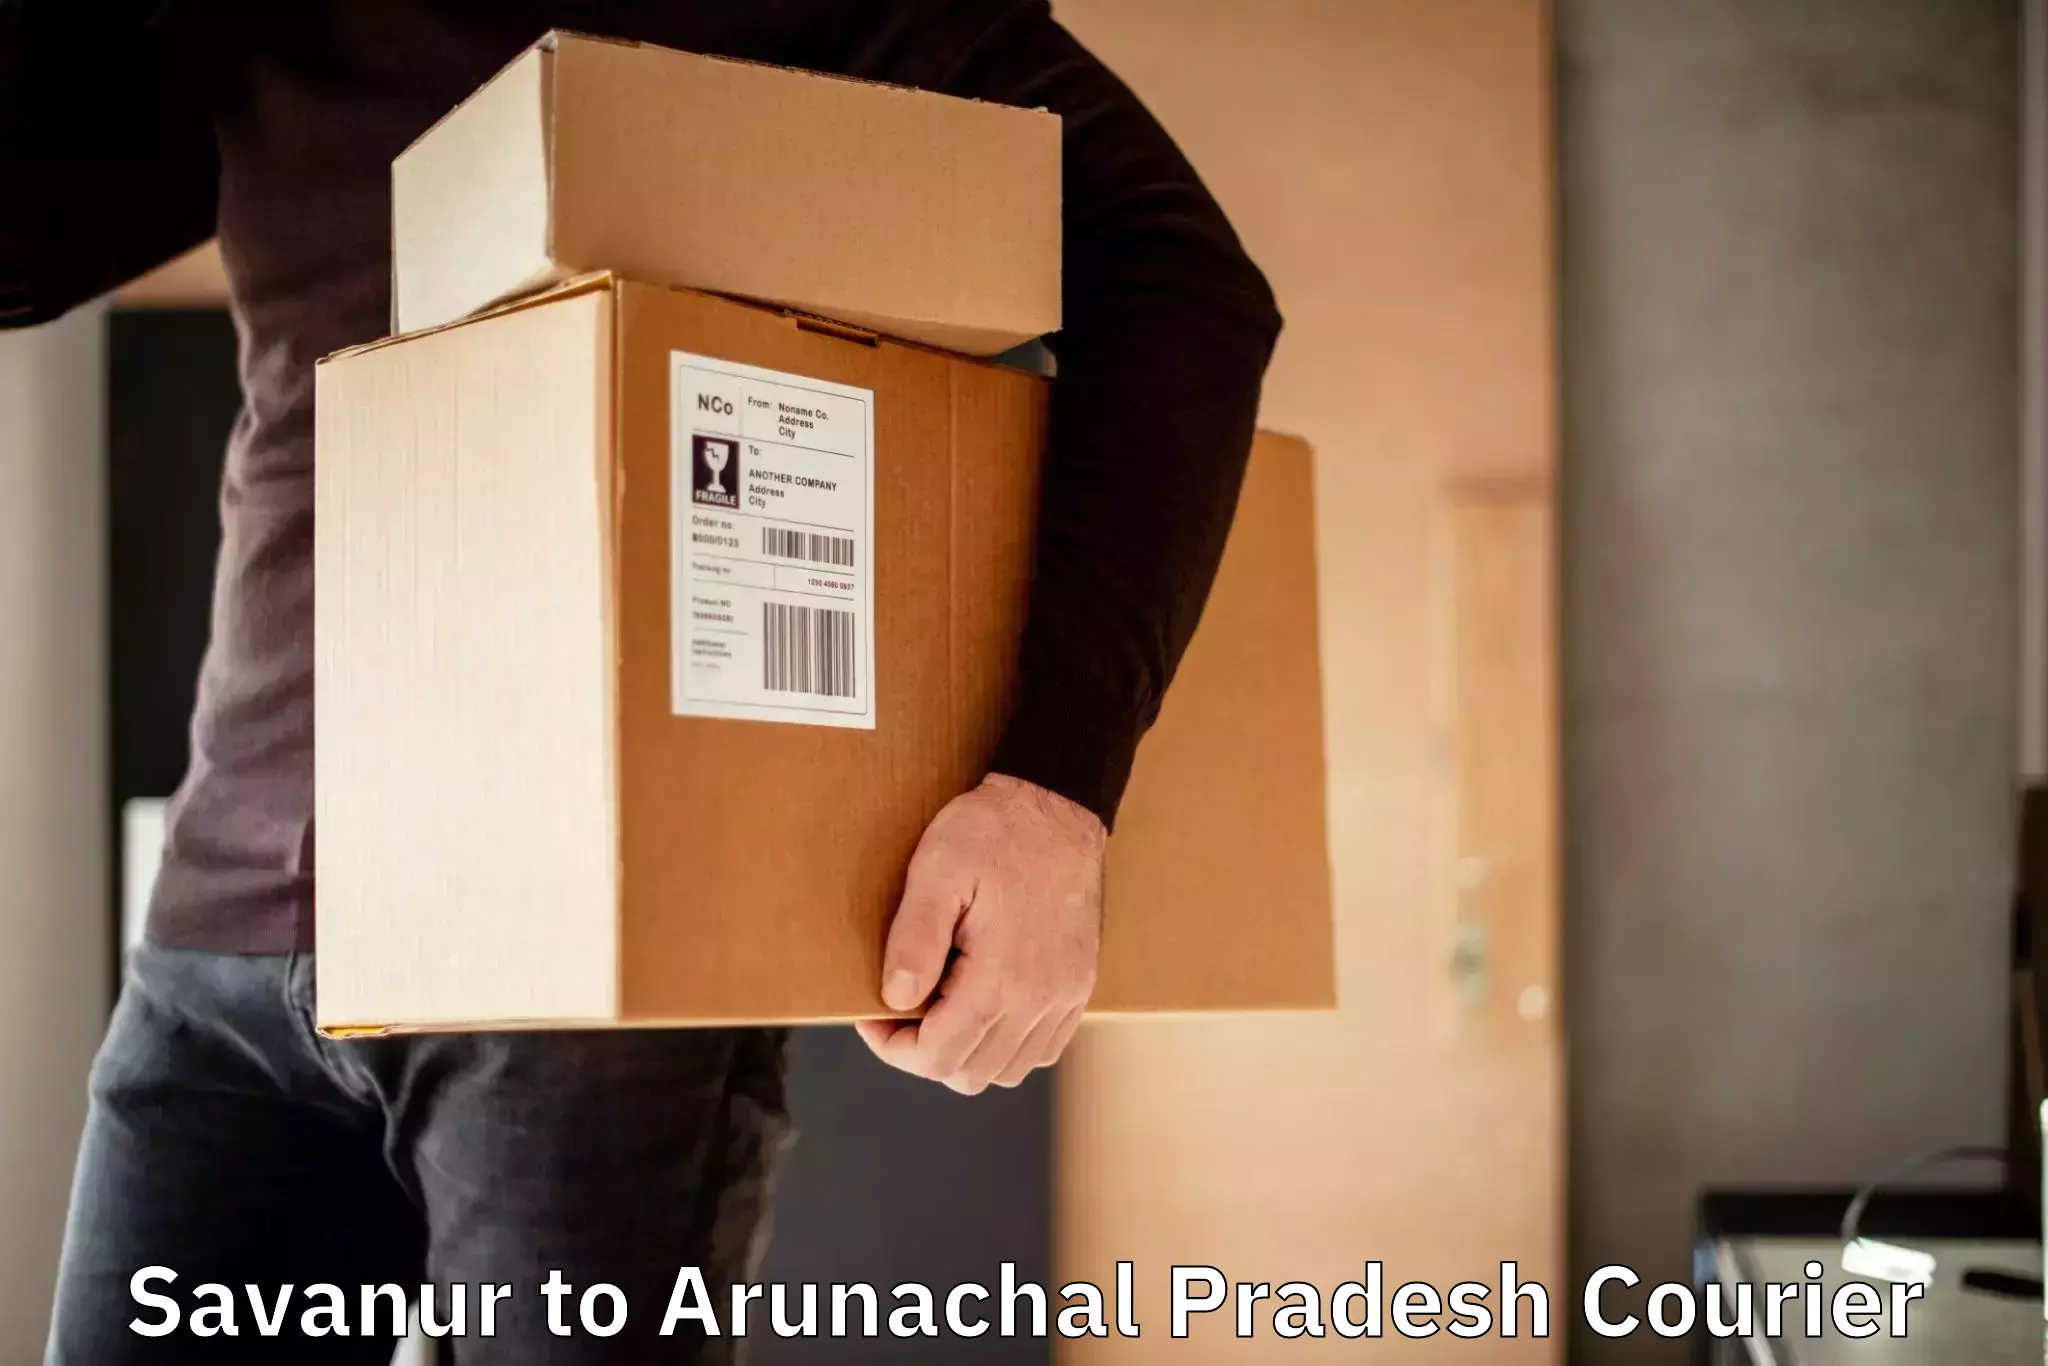 Nationwide delivery network Savanur to Arunachal Pradesh